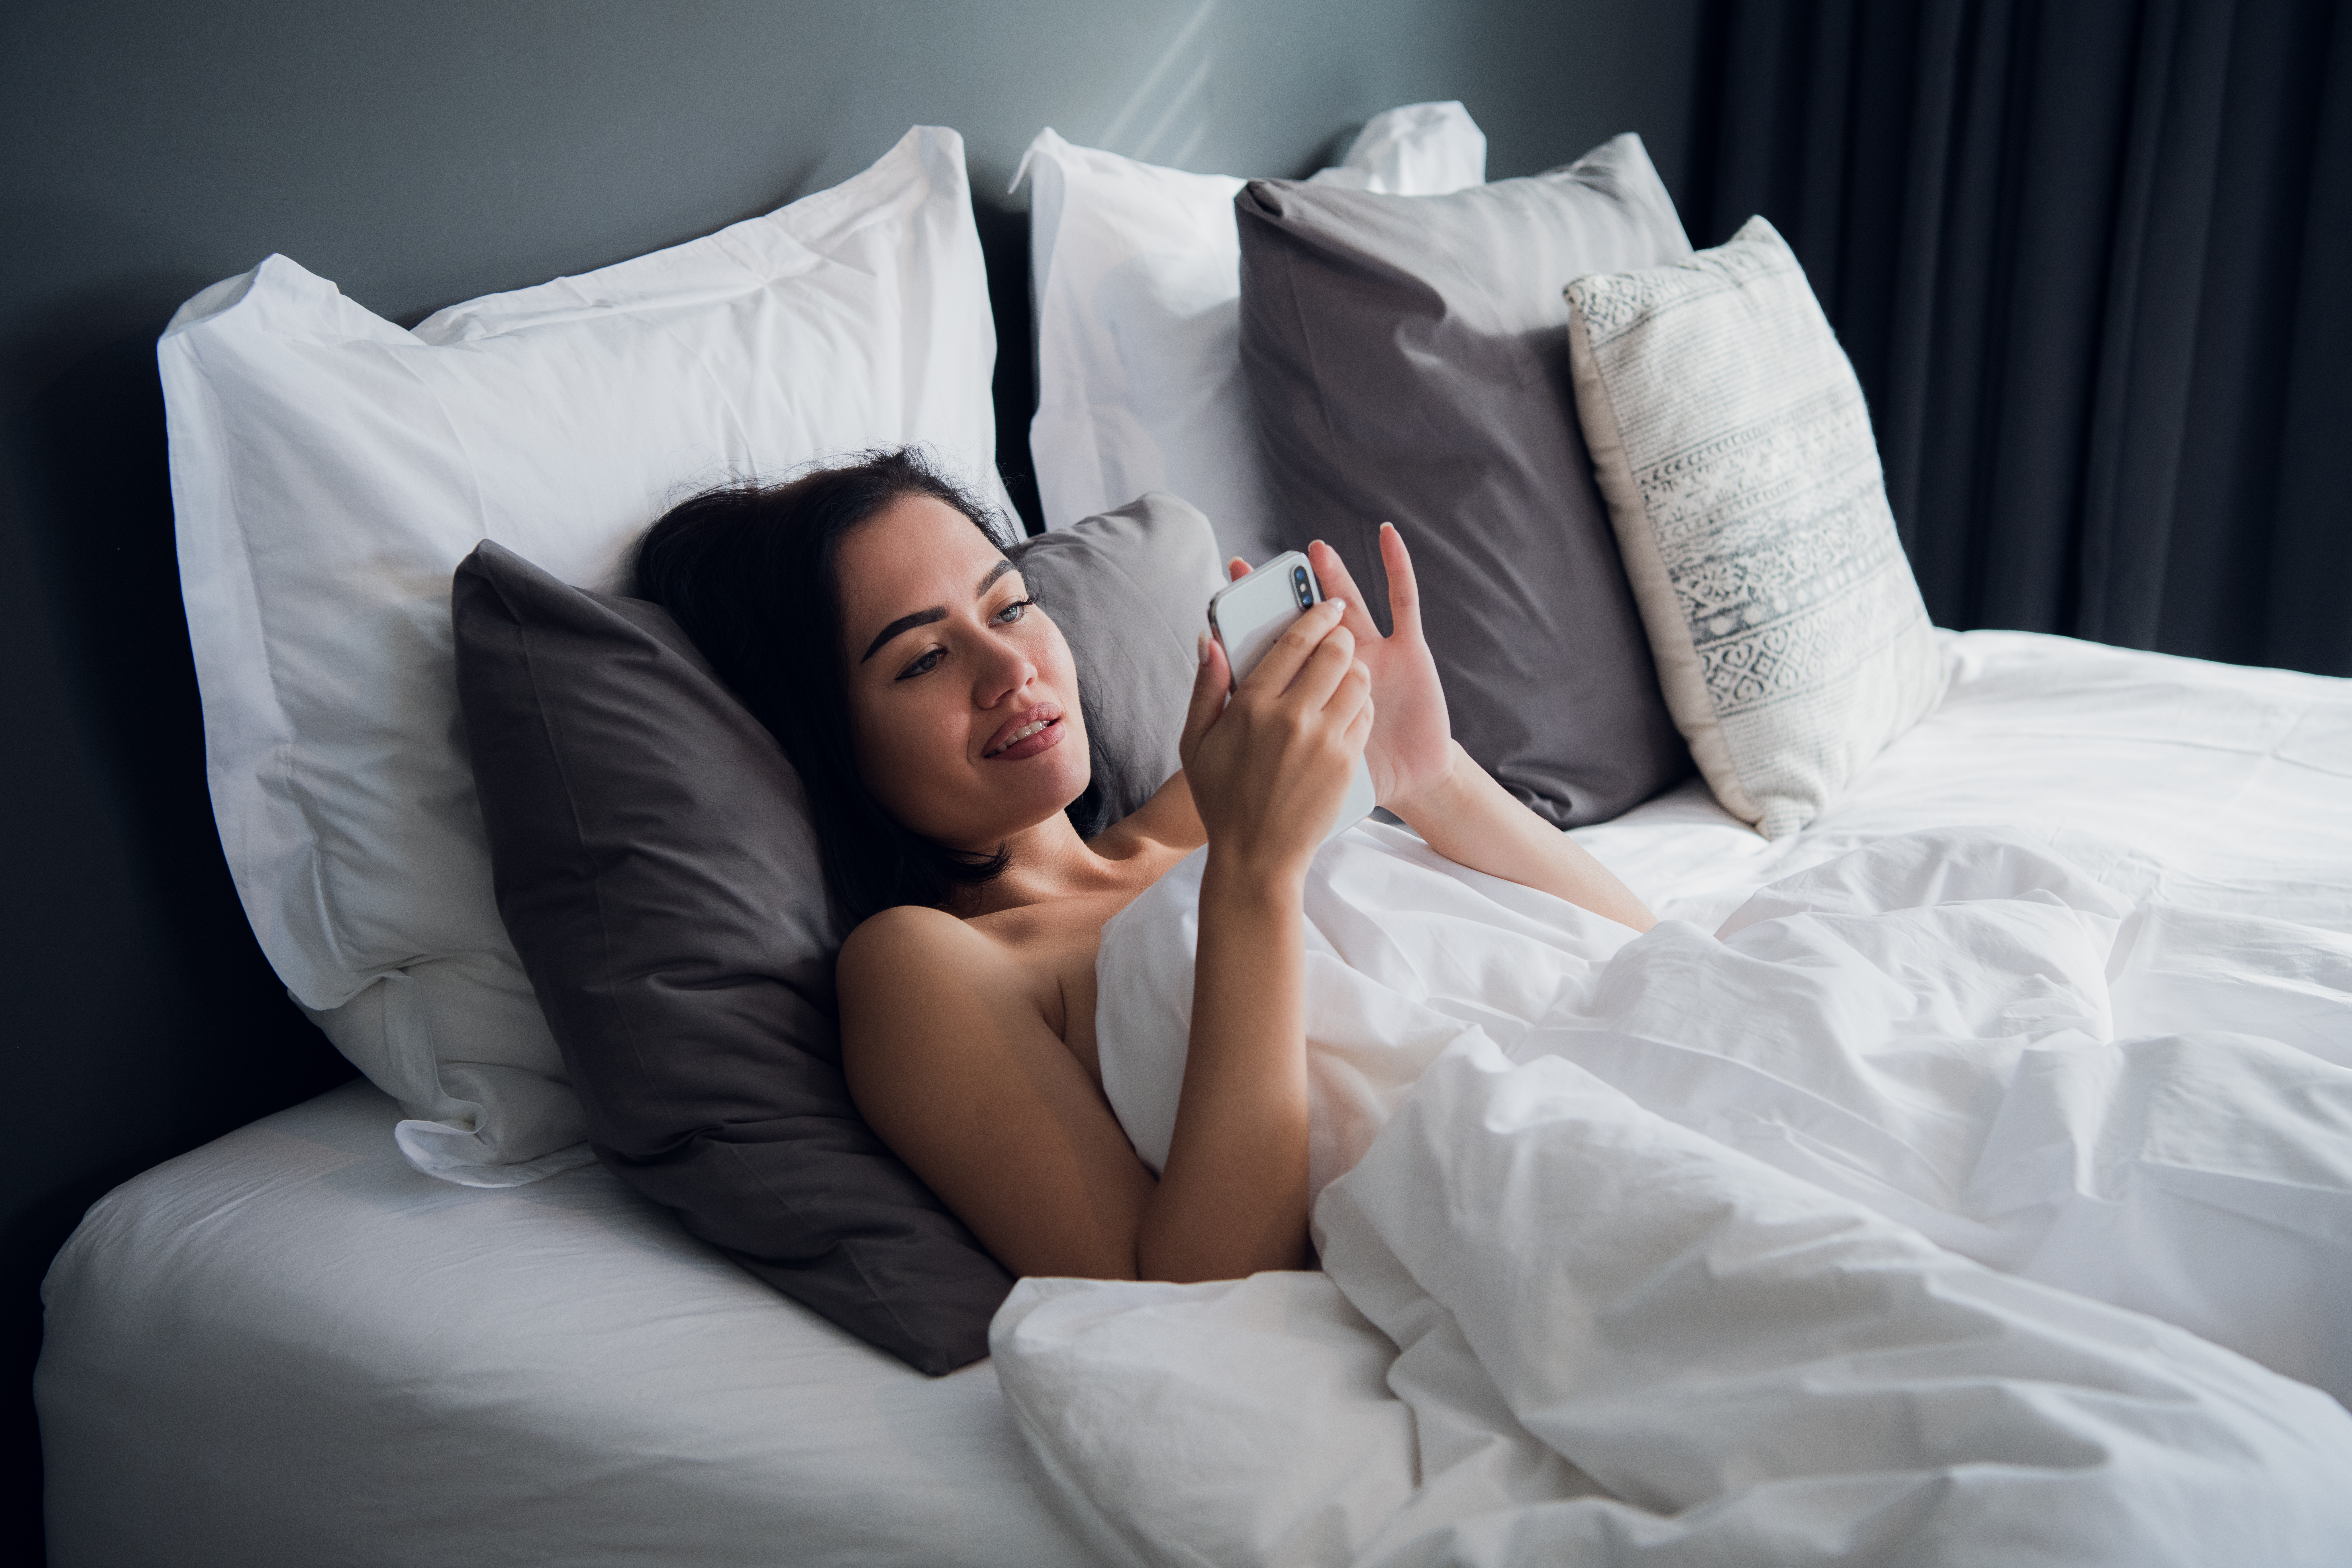 Девушка лежа на кровати снимает на видео камеру домашнюю мастурбацию